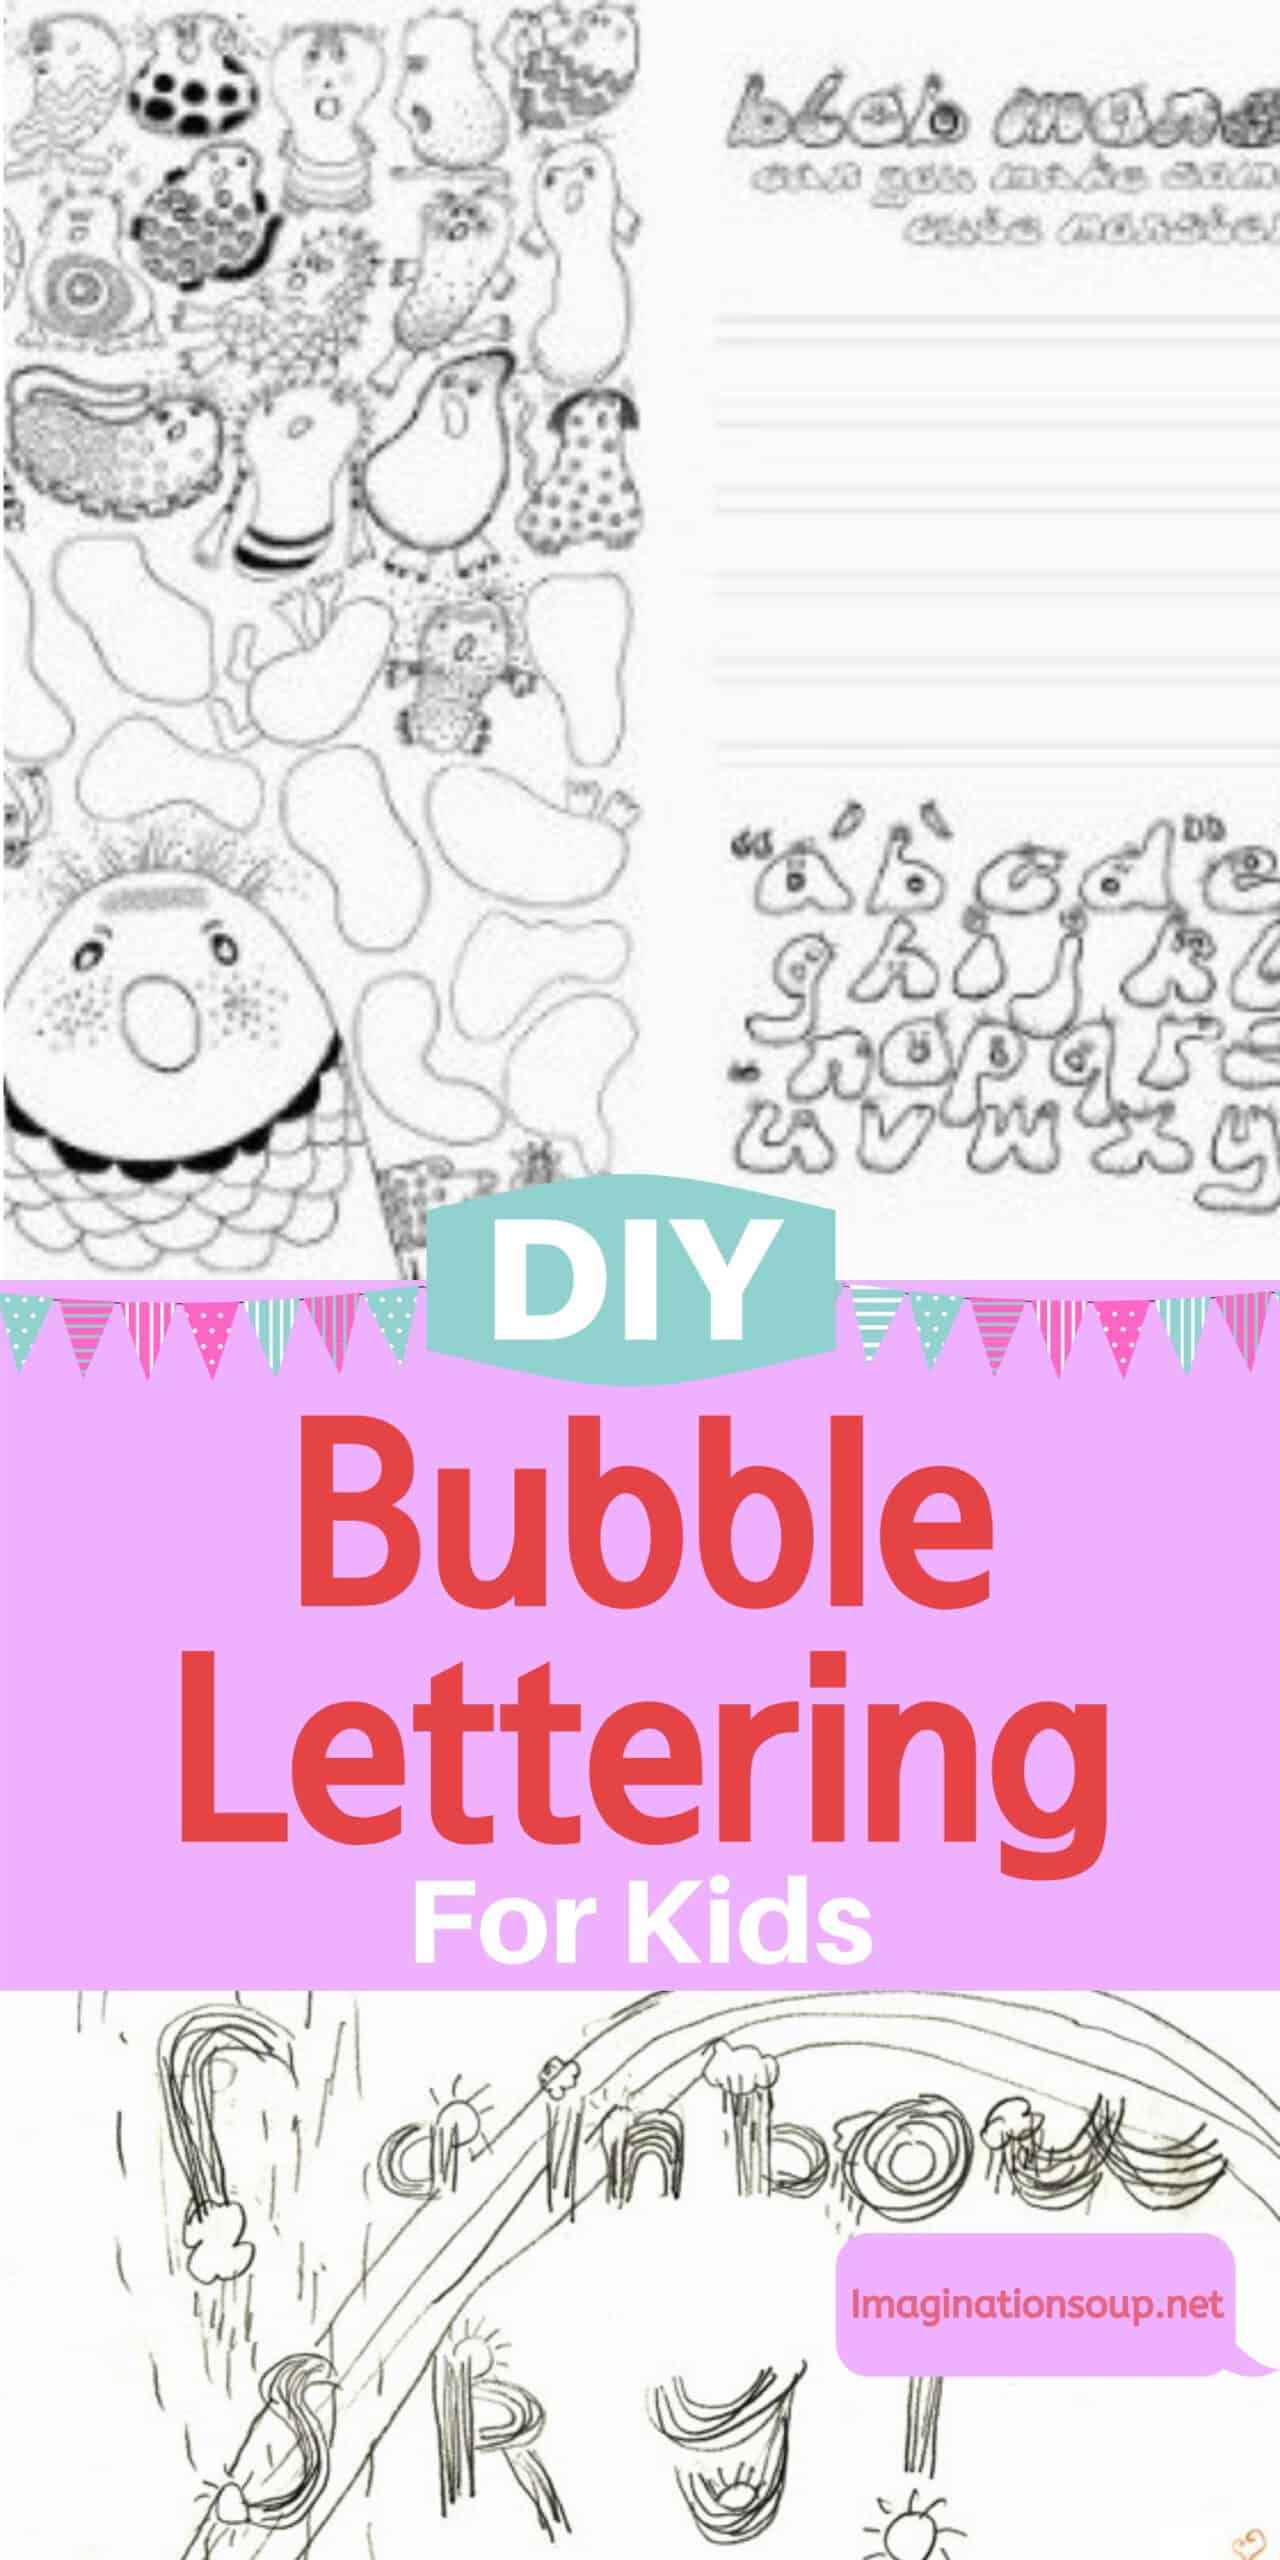 La escritura con burbujas (letras) motiva a los niños (principalmente) a escribir